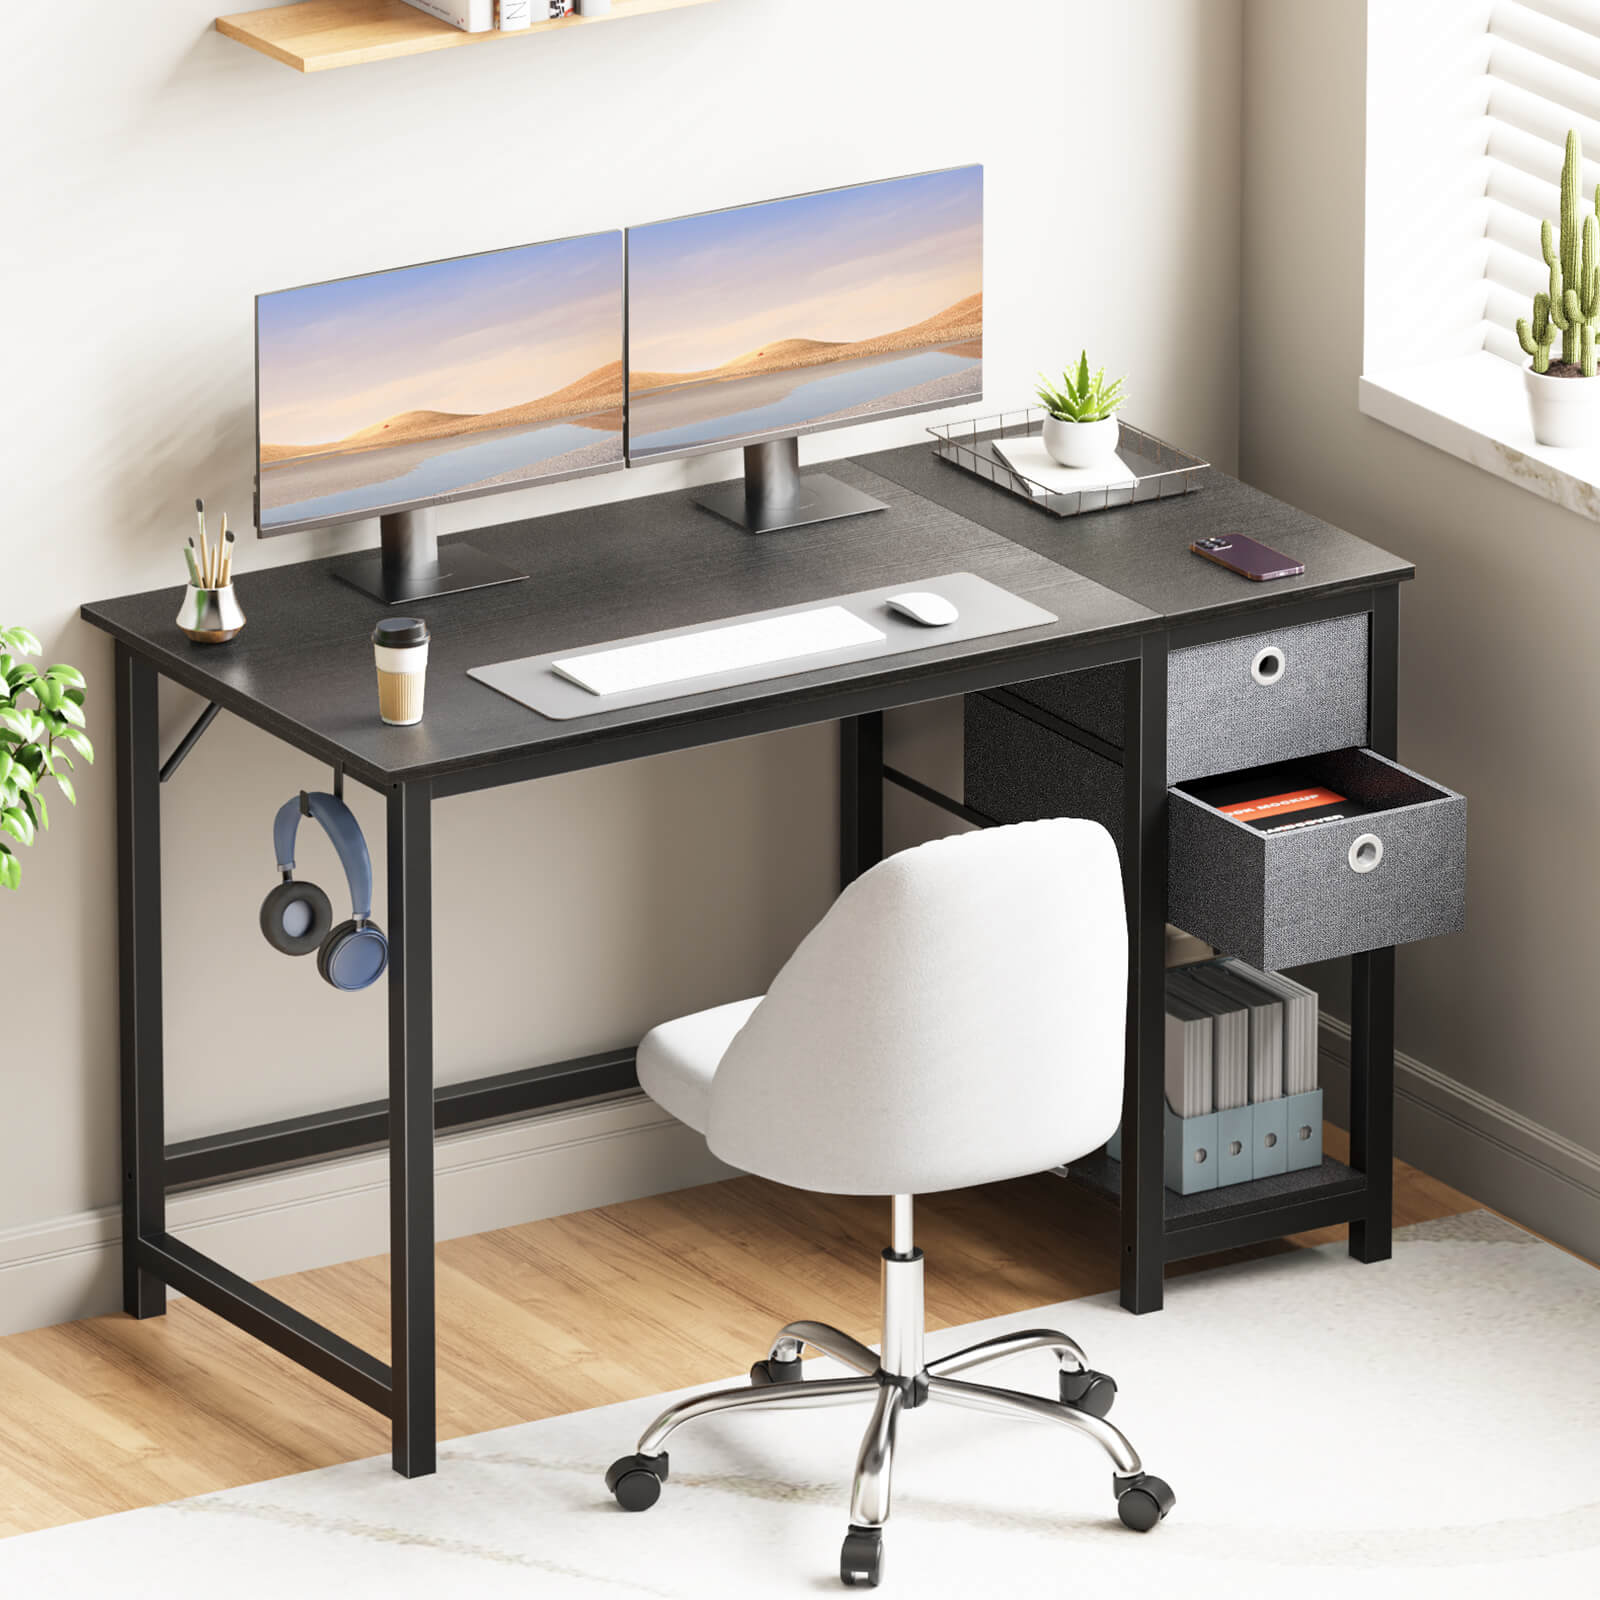 Computer Desk -40/47/55 inch Desk Study Desk with 2 Drawer Storage Shelf Headphone Hook for Bedroom, Game Room, Office, Living Room